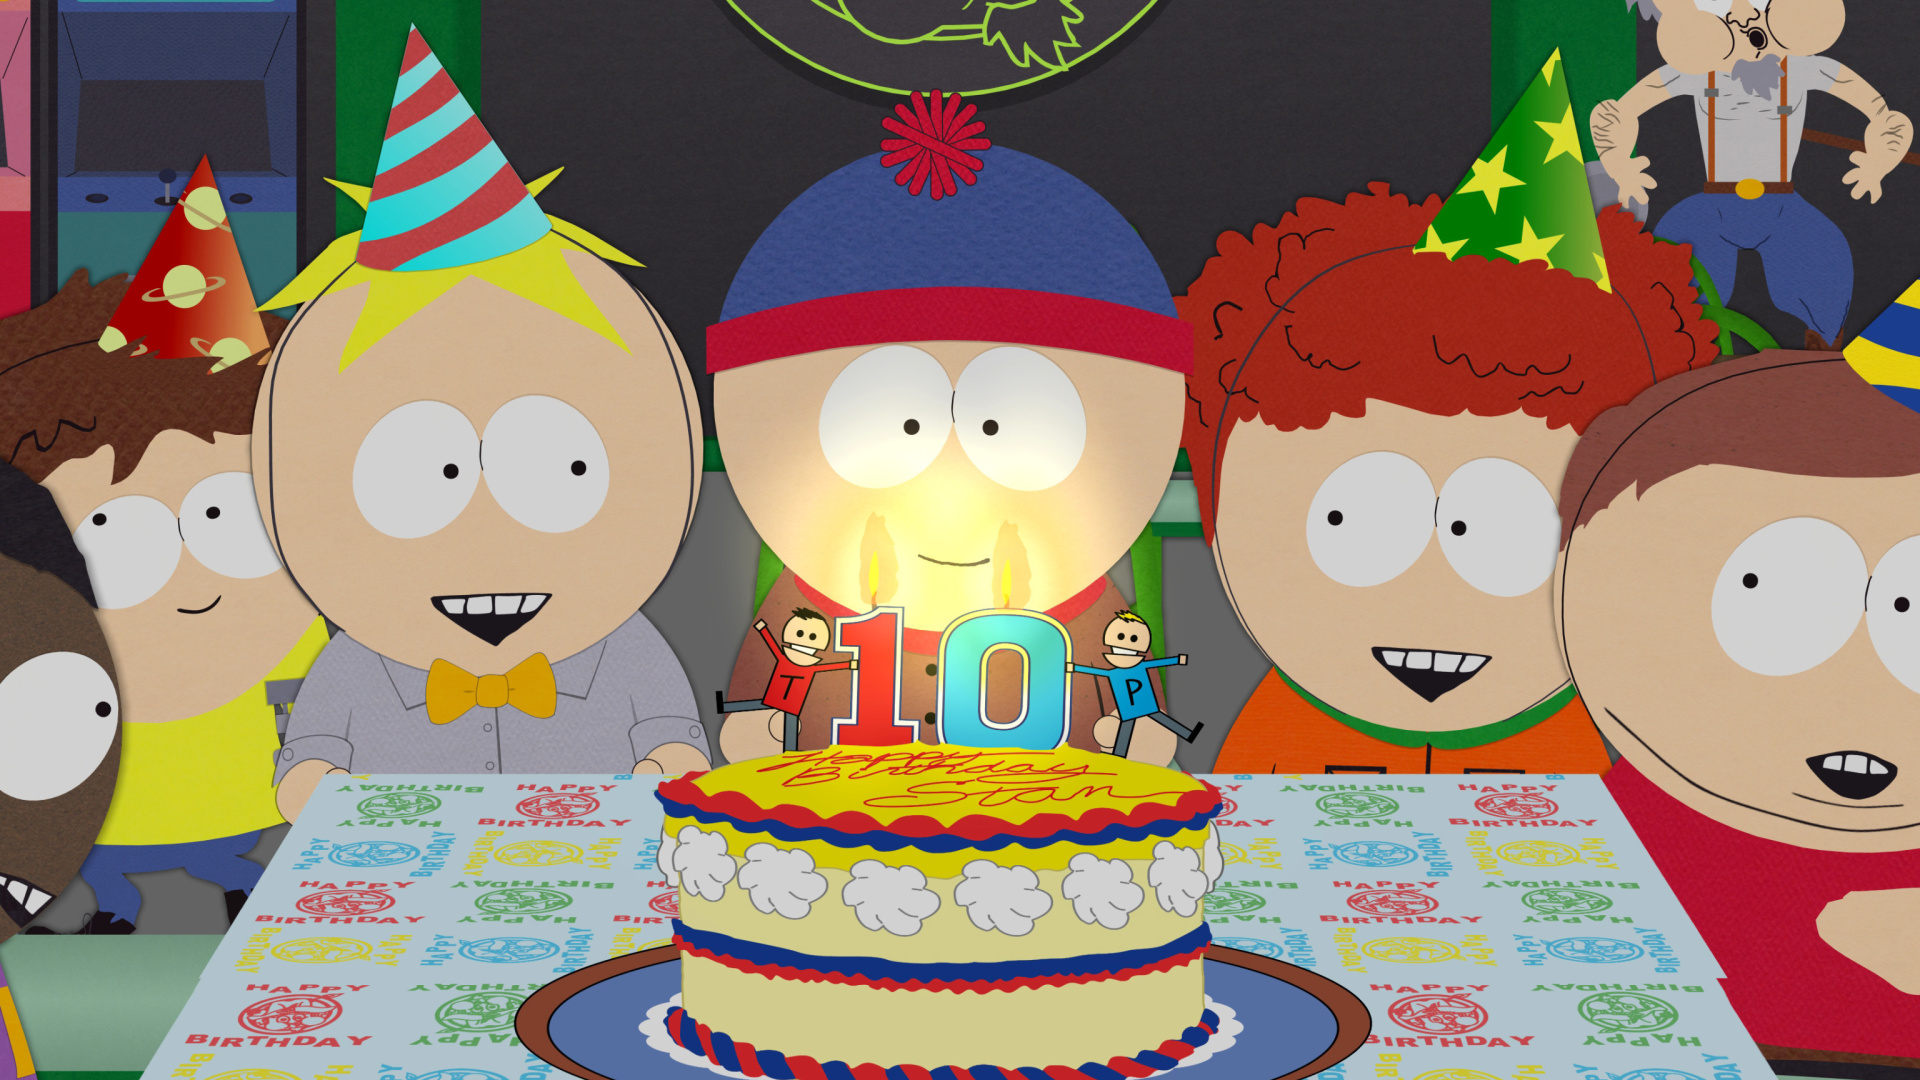 South Park Season 15 Stans Party screenshot #1 1920x1080